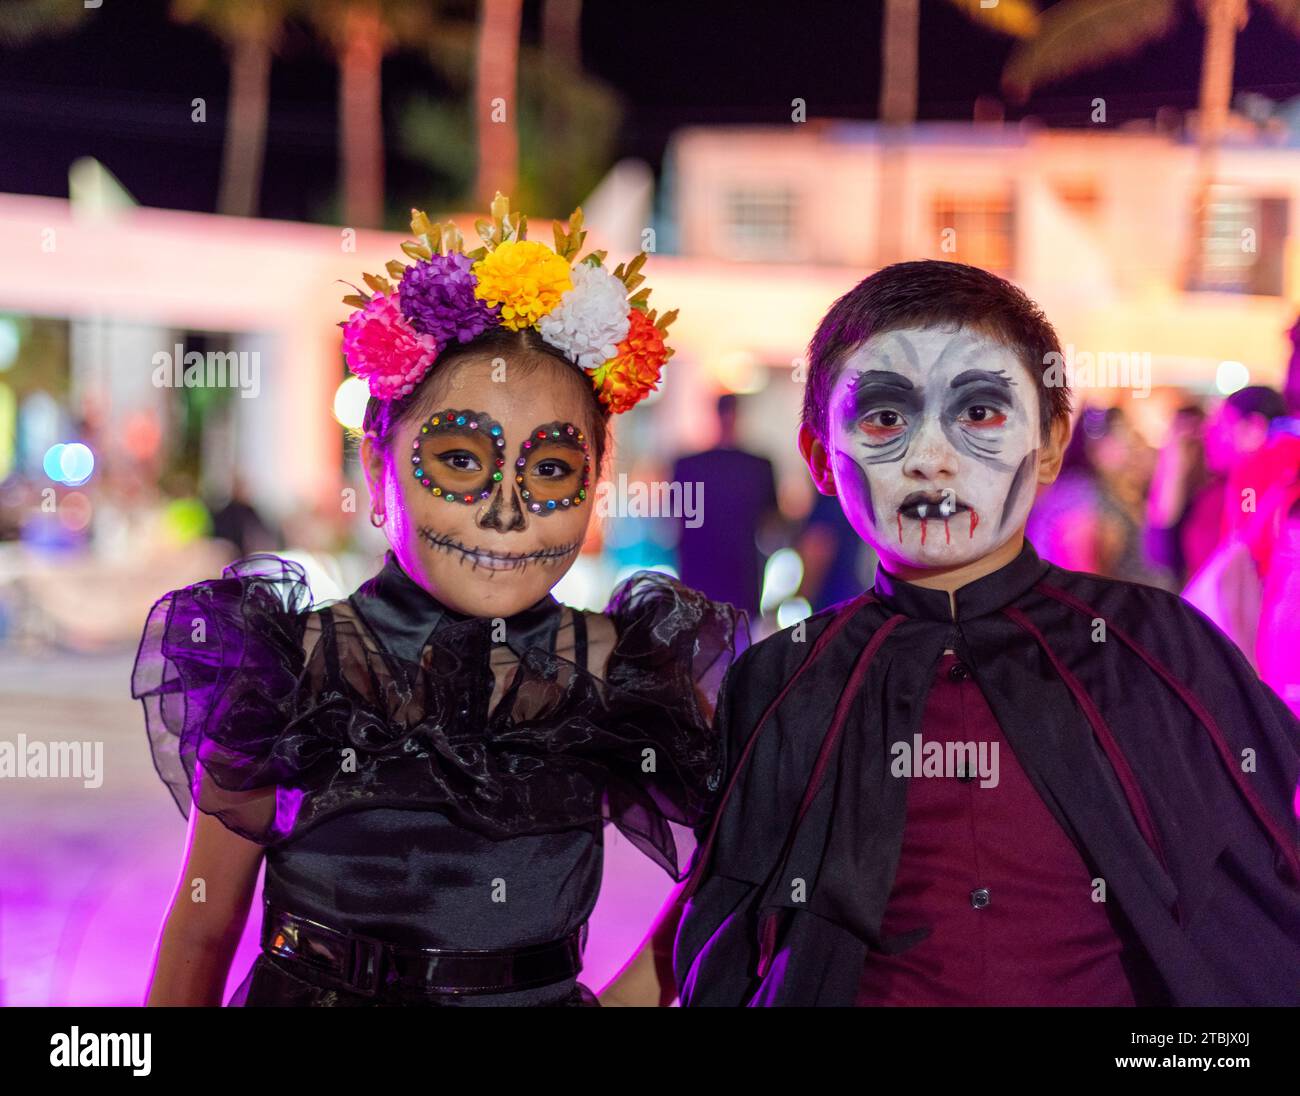 Mexiko, Isla Mujures, Ein junges Mädchen und Junge in Kostümen, einer als Vampir, um den Tag der Toten zu feiern, auch bekannt als Dia de los Muertos Stockfoto